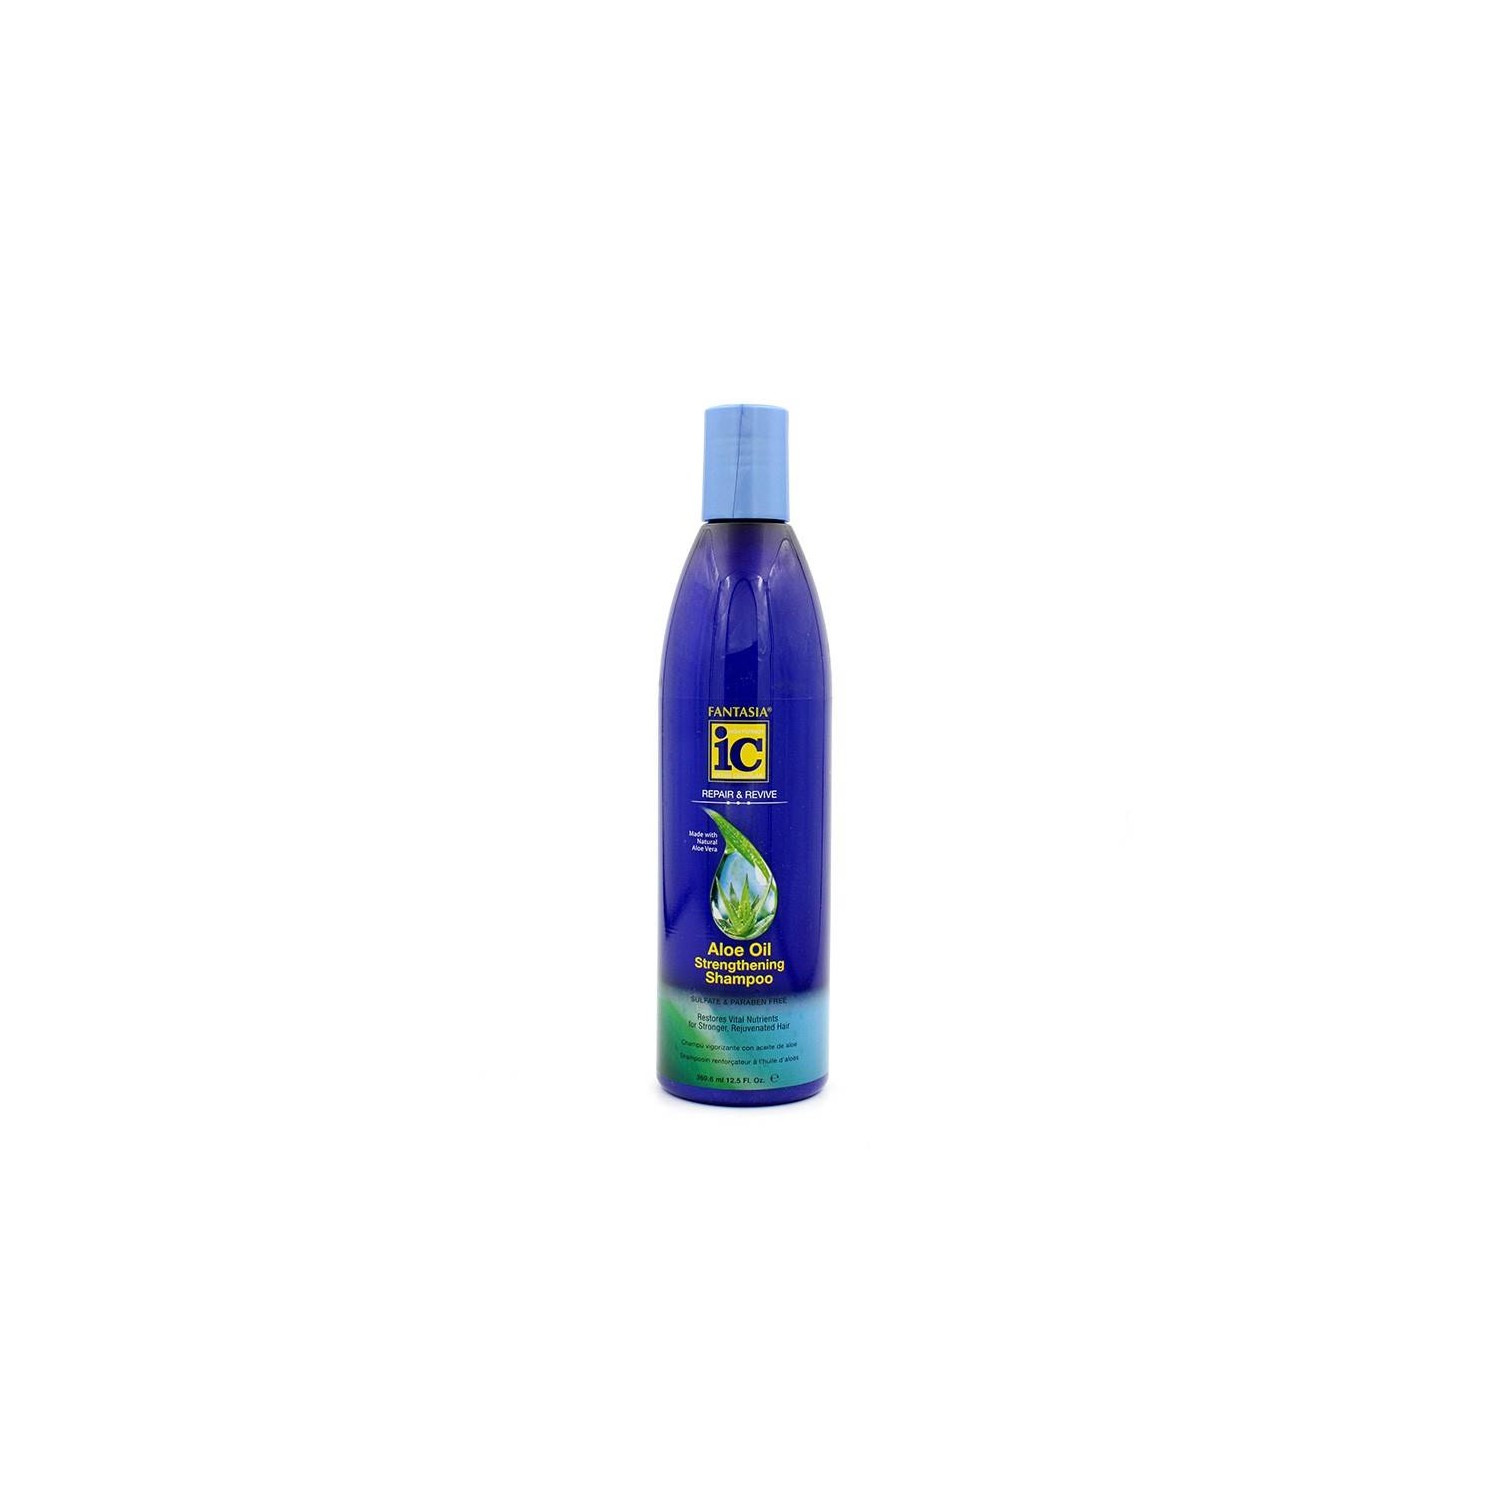 Fantasia Ic Aloe Oil Shampooing369 ml